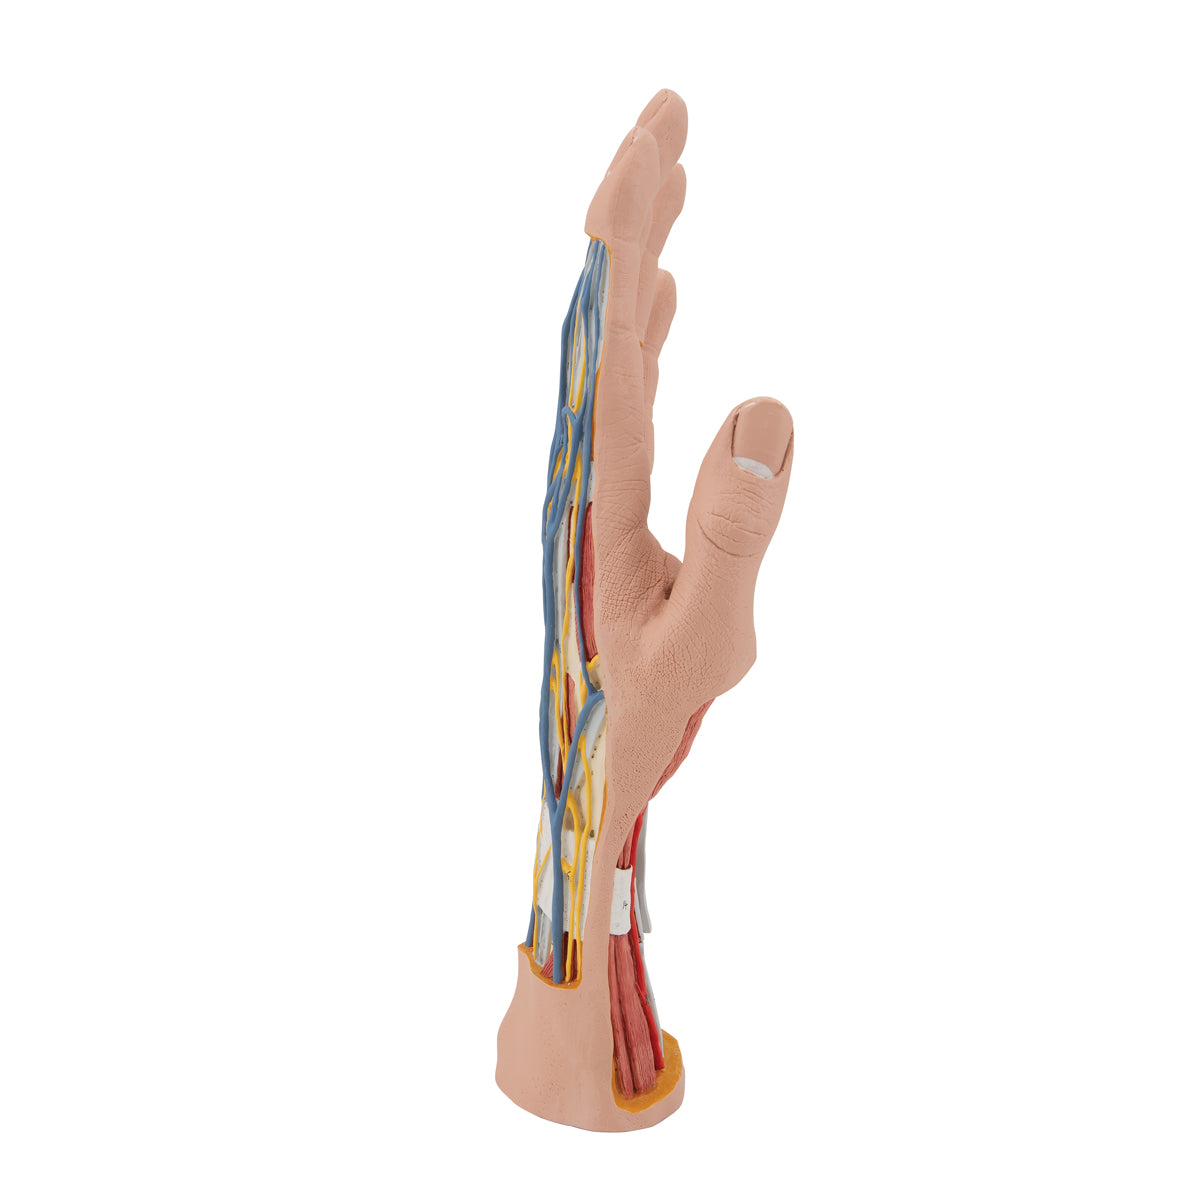 Komplett handmodell med hud, muskler, senor, kärl och nerver - kan delas upp i 3 delar